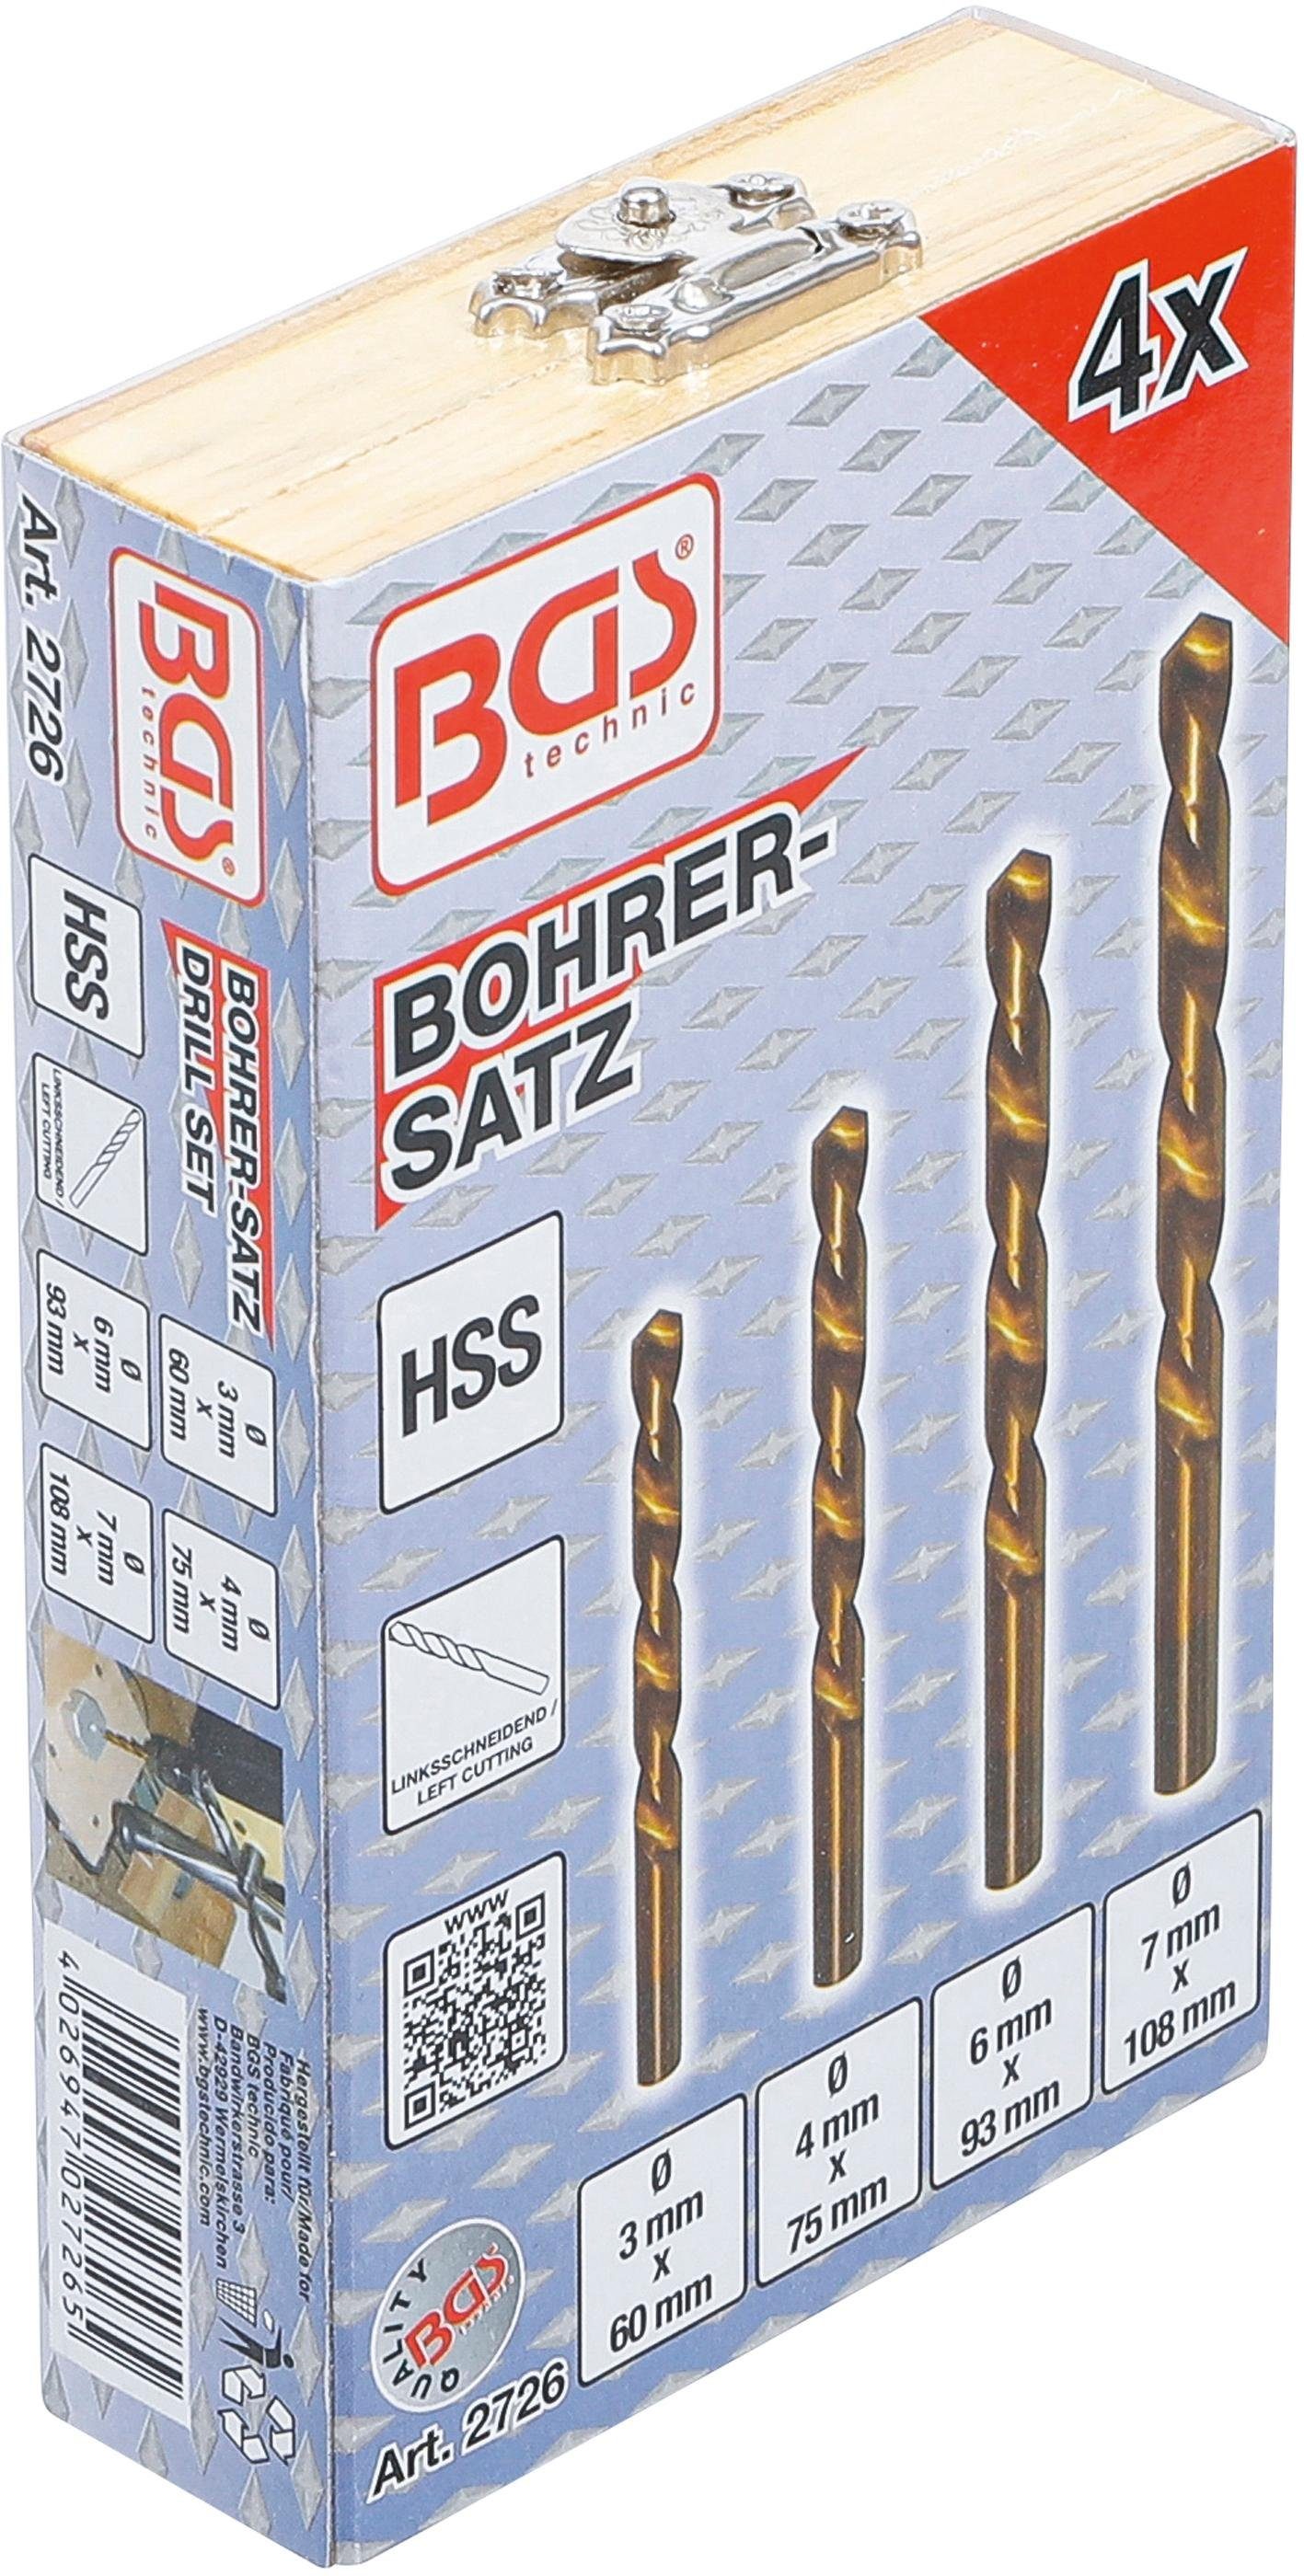 BGS technic Spiralbohrer HSS, linksschneidend, 4-tlg. Bohrer-Satz